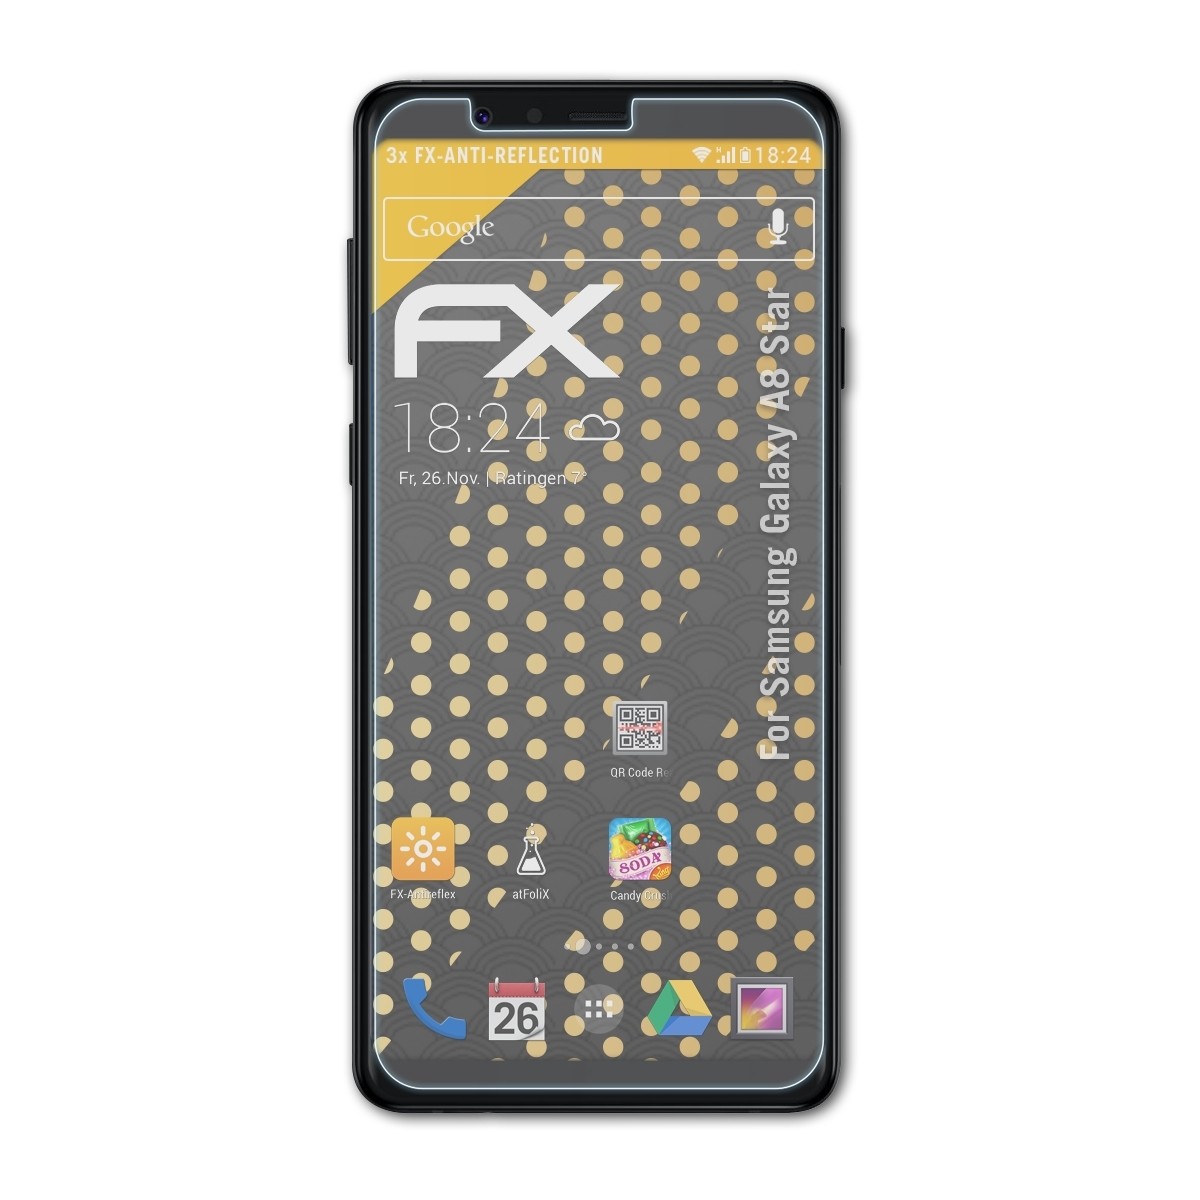 ATFOLIX 3x Star) FX-Antireflex Galaxy A8 Samsung Displayschutz(für